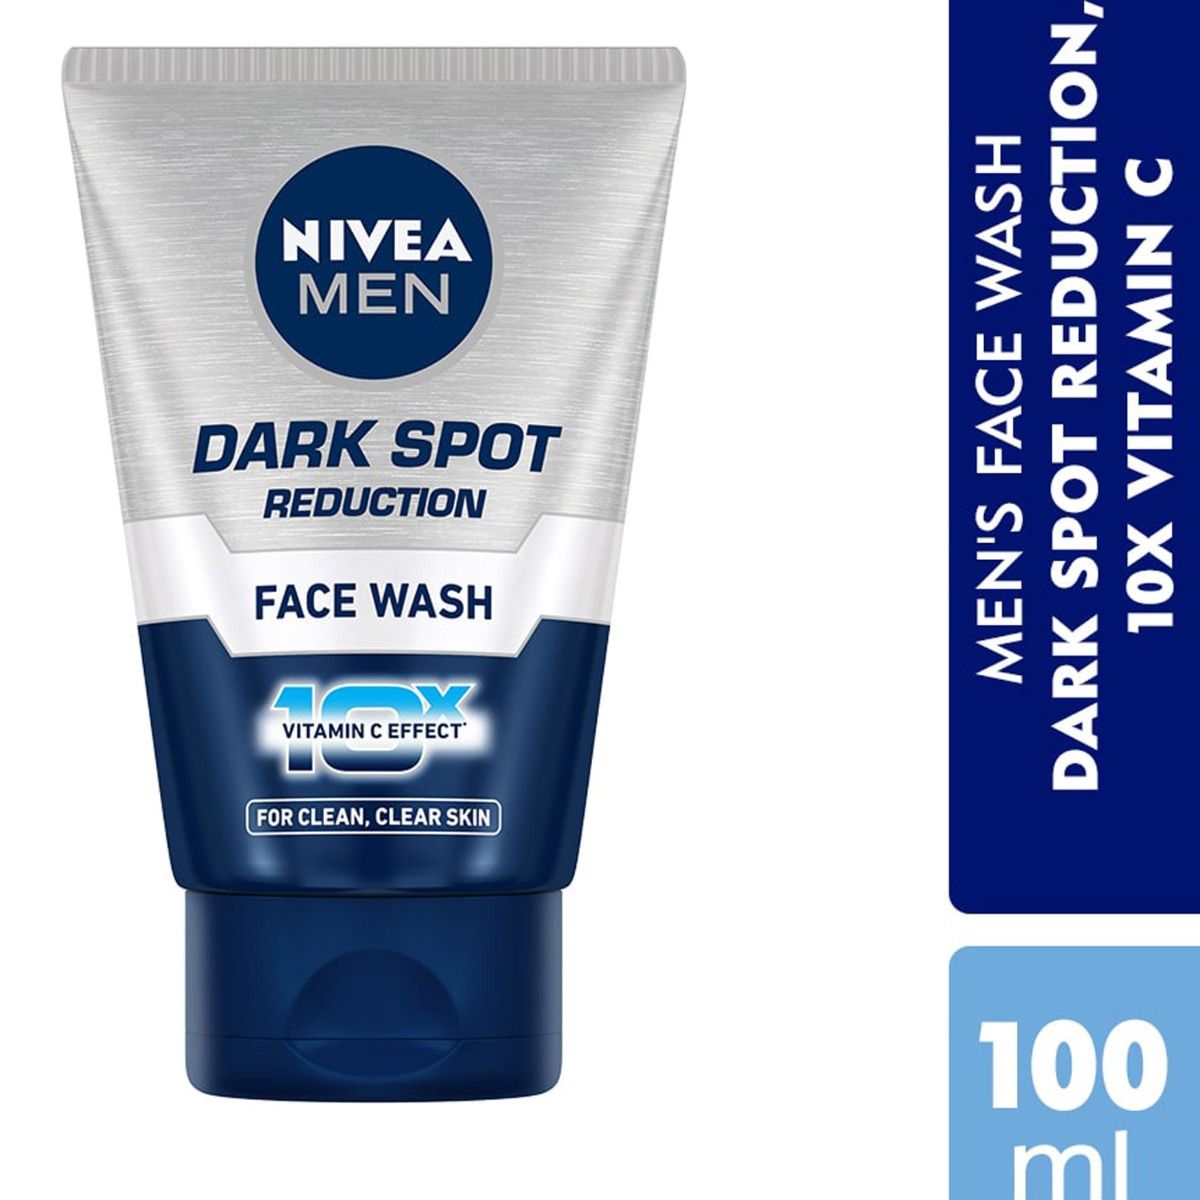 Nivea Men Dark Spot Reduction Face Wash, 100 gm, Pack of 1 